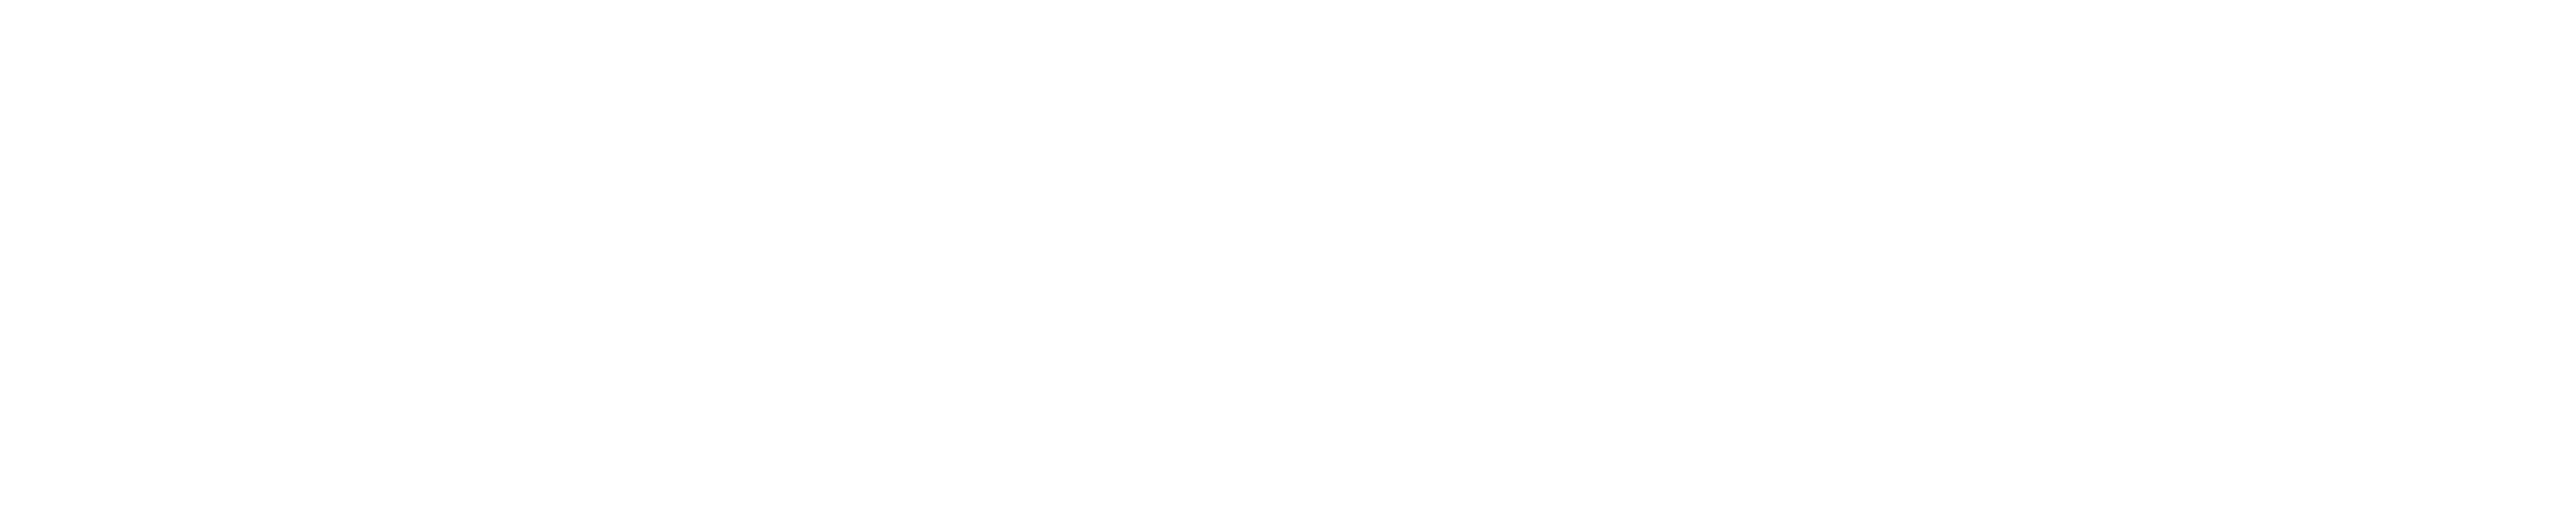 FDM Digital